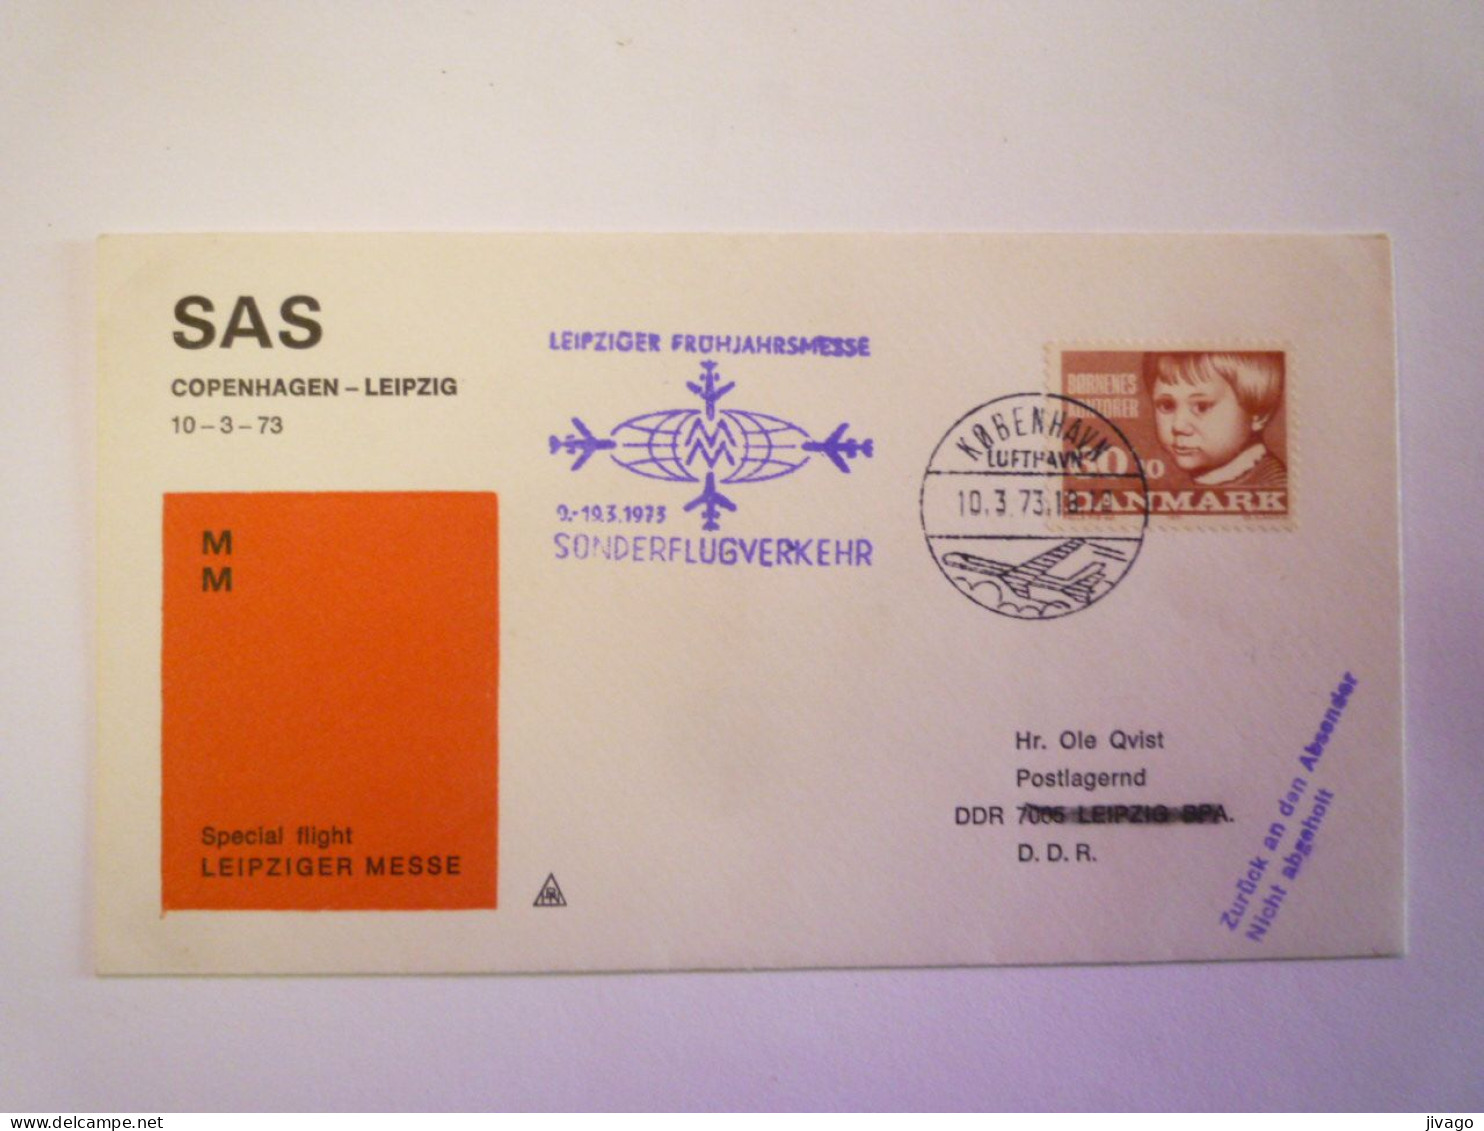 2024 - 609  SAS  COPENHAGEN  -  LEIPZIG  Special Flight  LEIPZIGER MESSE   1973    XXX - Luchtpostzegels